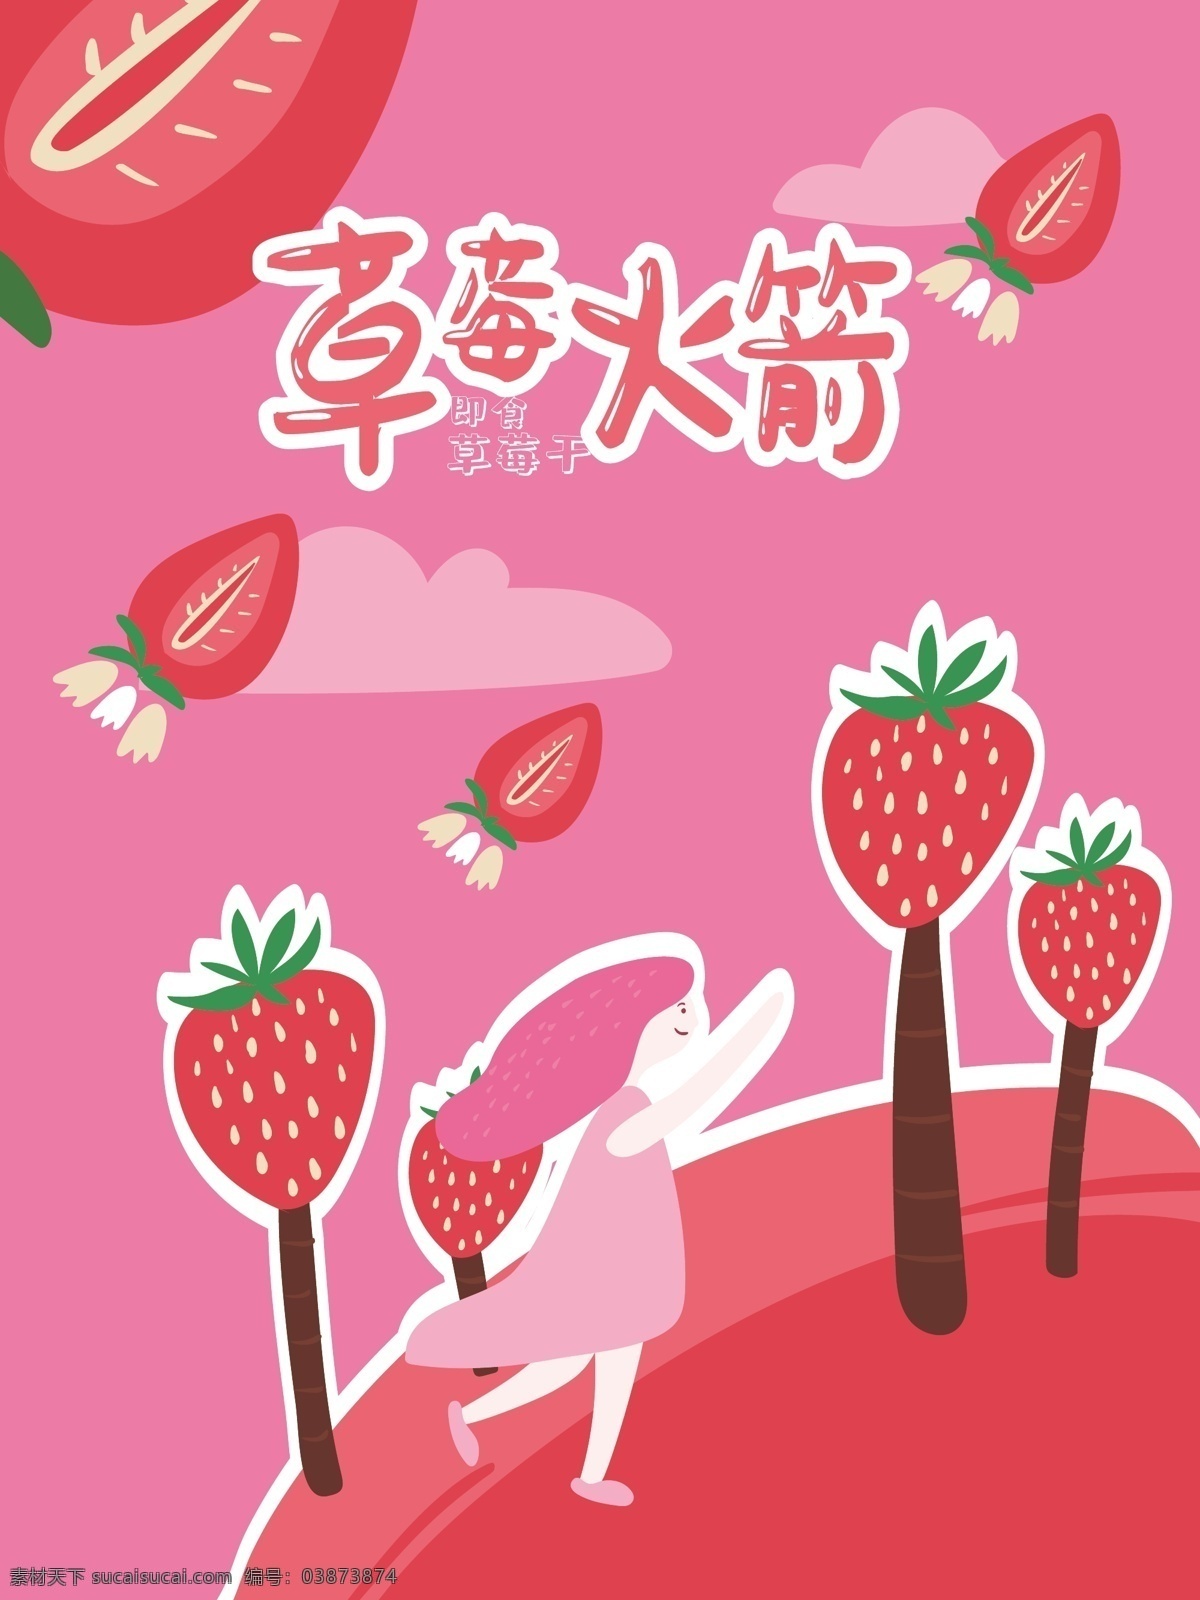 草莓 干 包装 水果 草莓干 水果干 女孩 水果包装 水果干包装 粉红